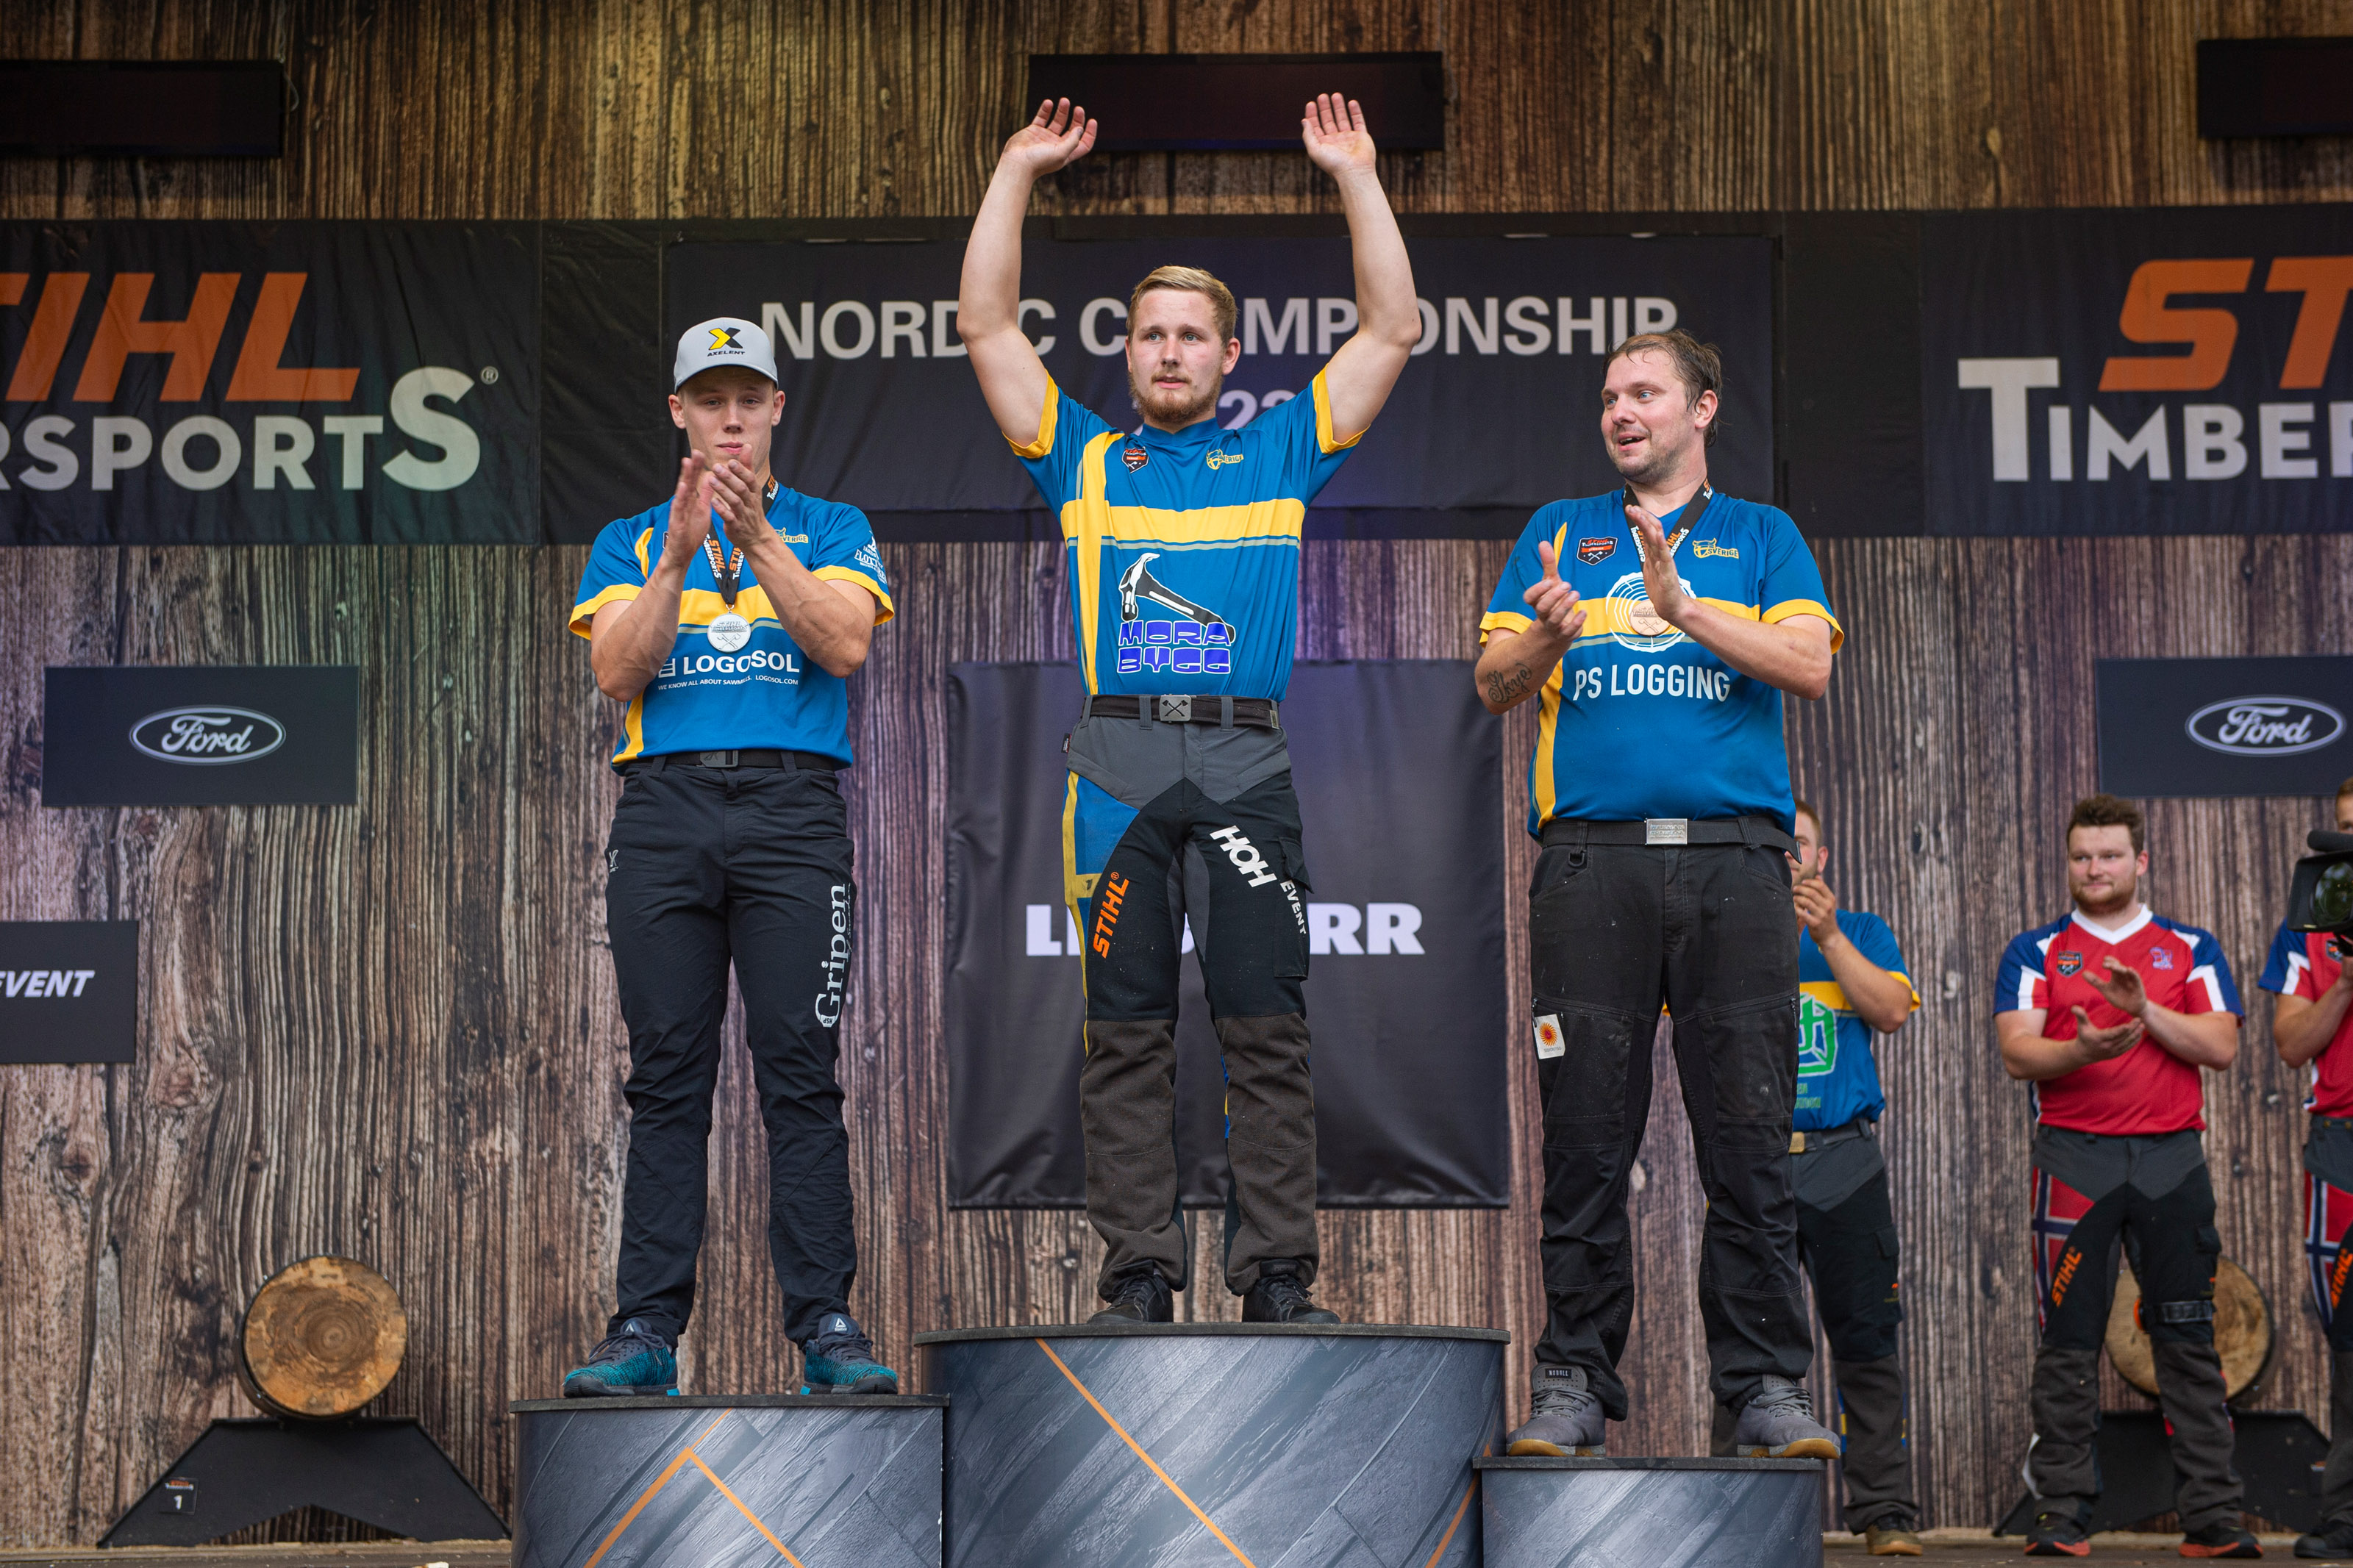 Emil Hansson (Mitte) gewinnt die Nordic Championship vor Ferry Svan (l.) und Pontus Skye (r.).